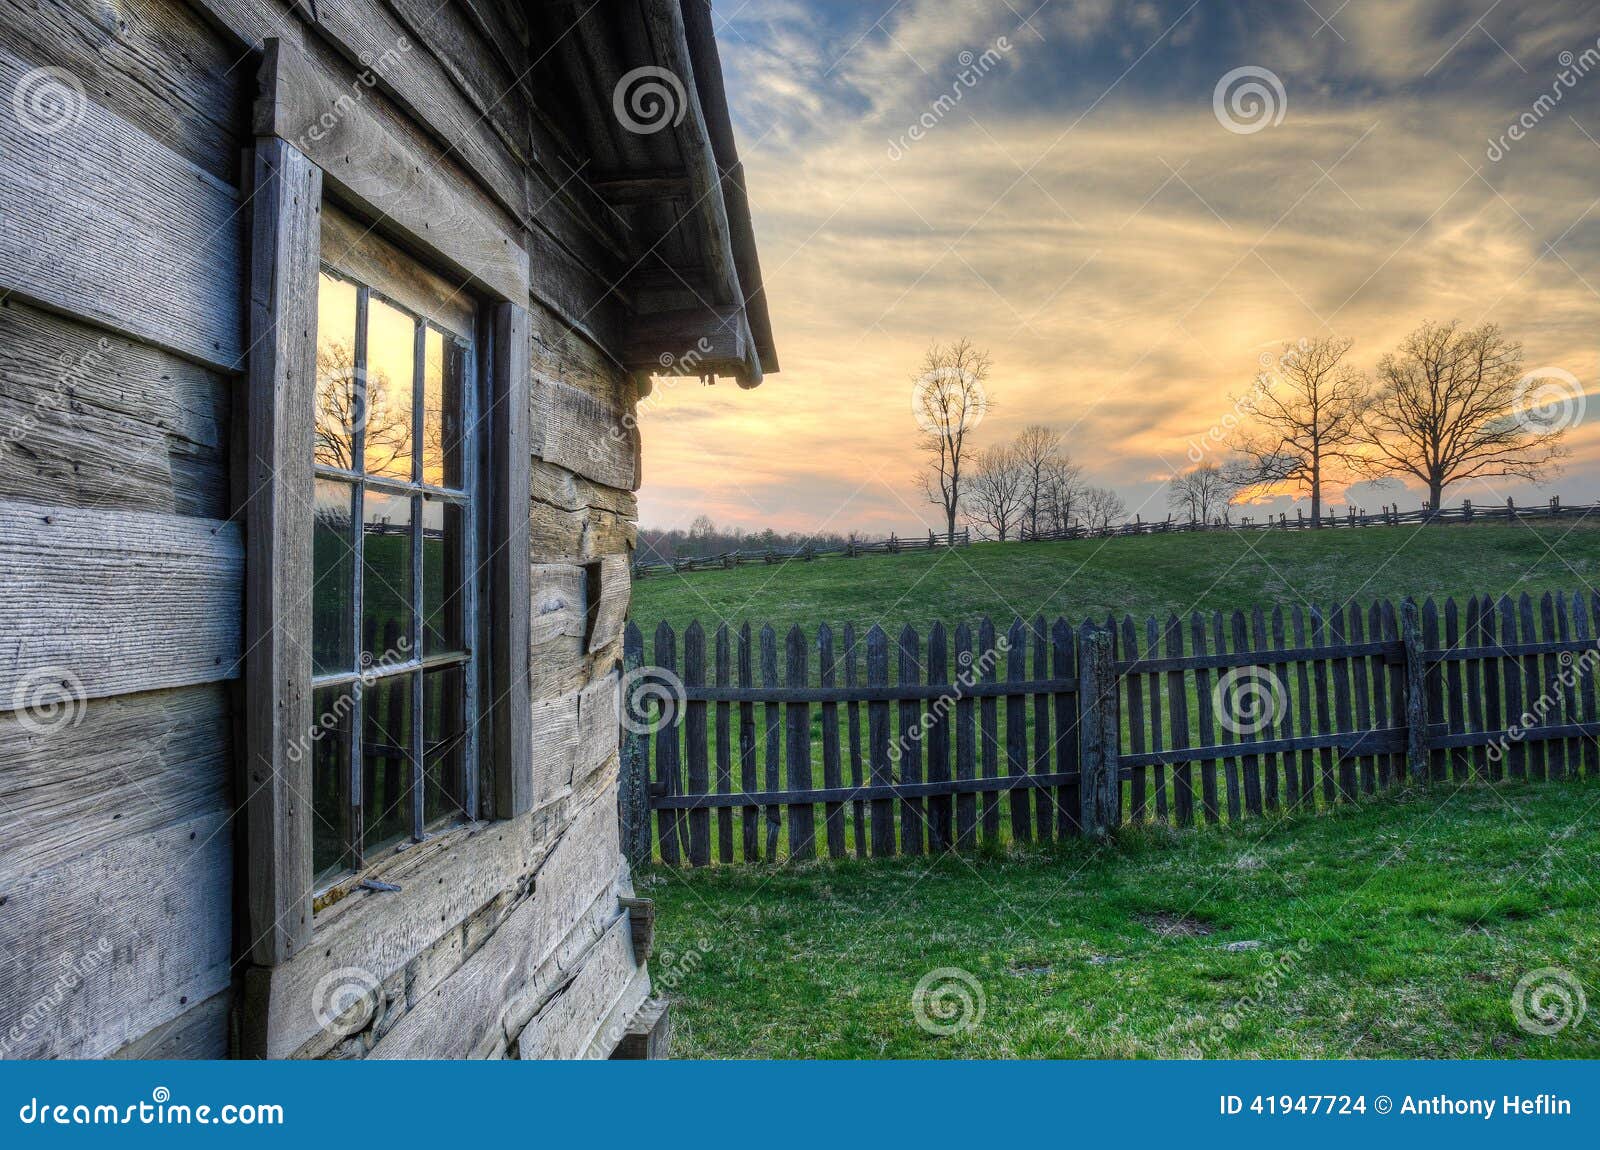 gibbons cabin sunset, hensley settlement